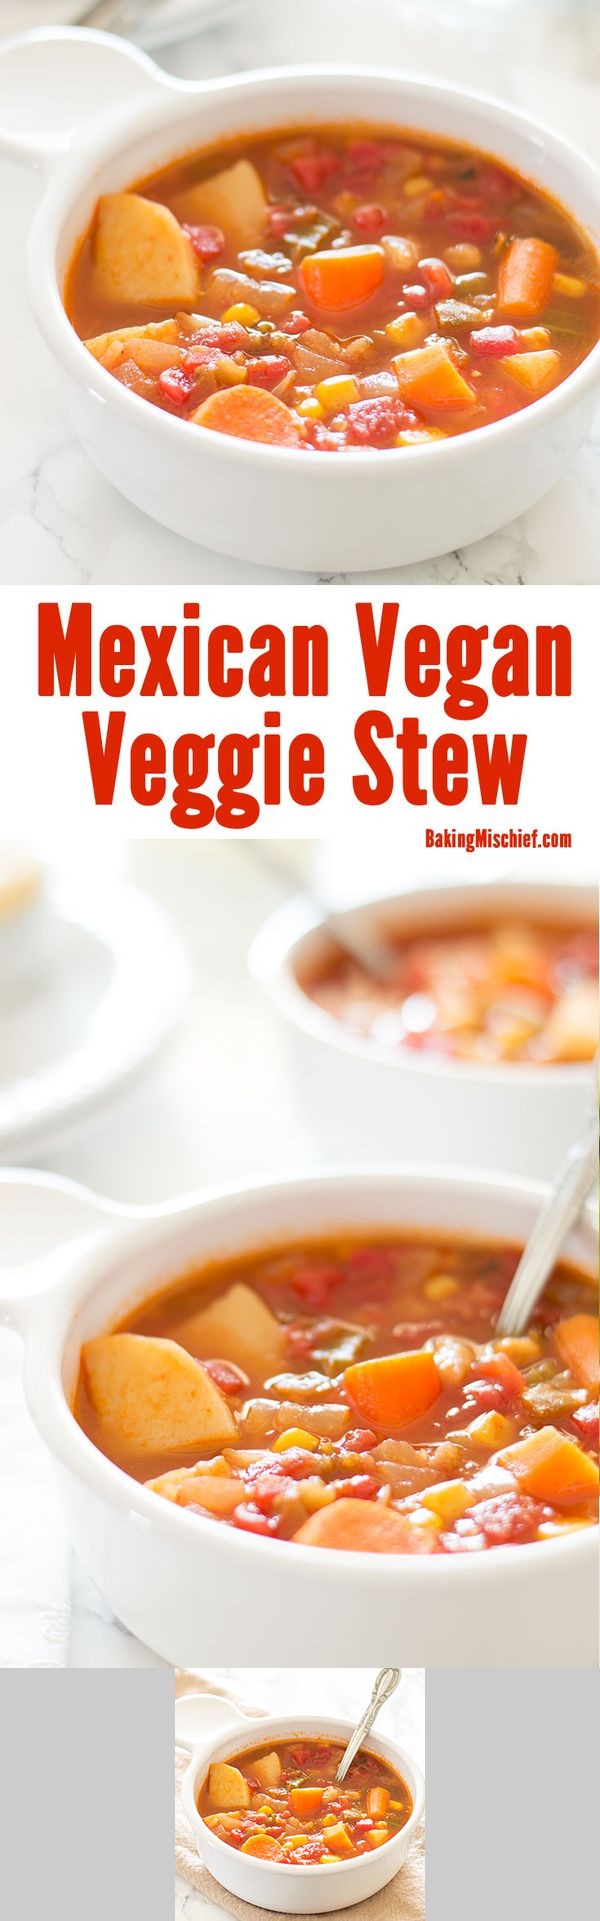 Mexican Vegan Vegetable Stew